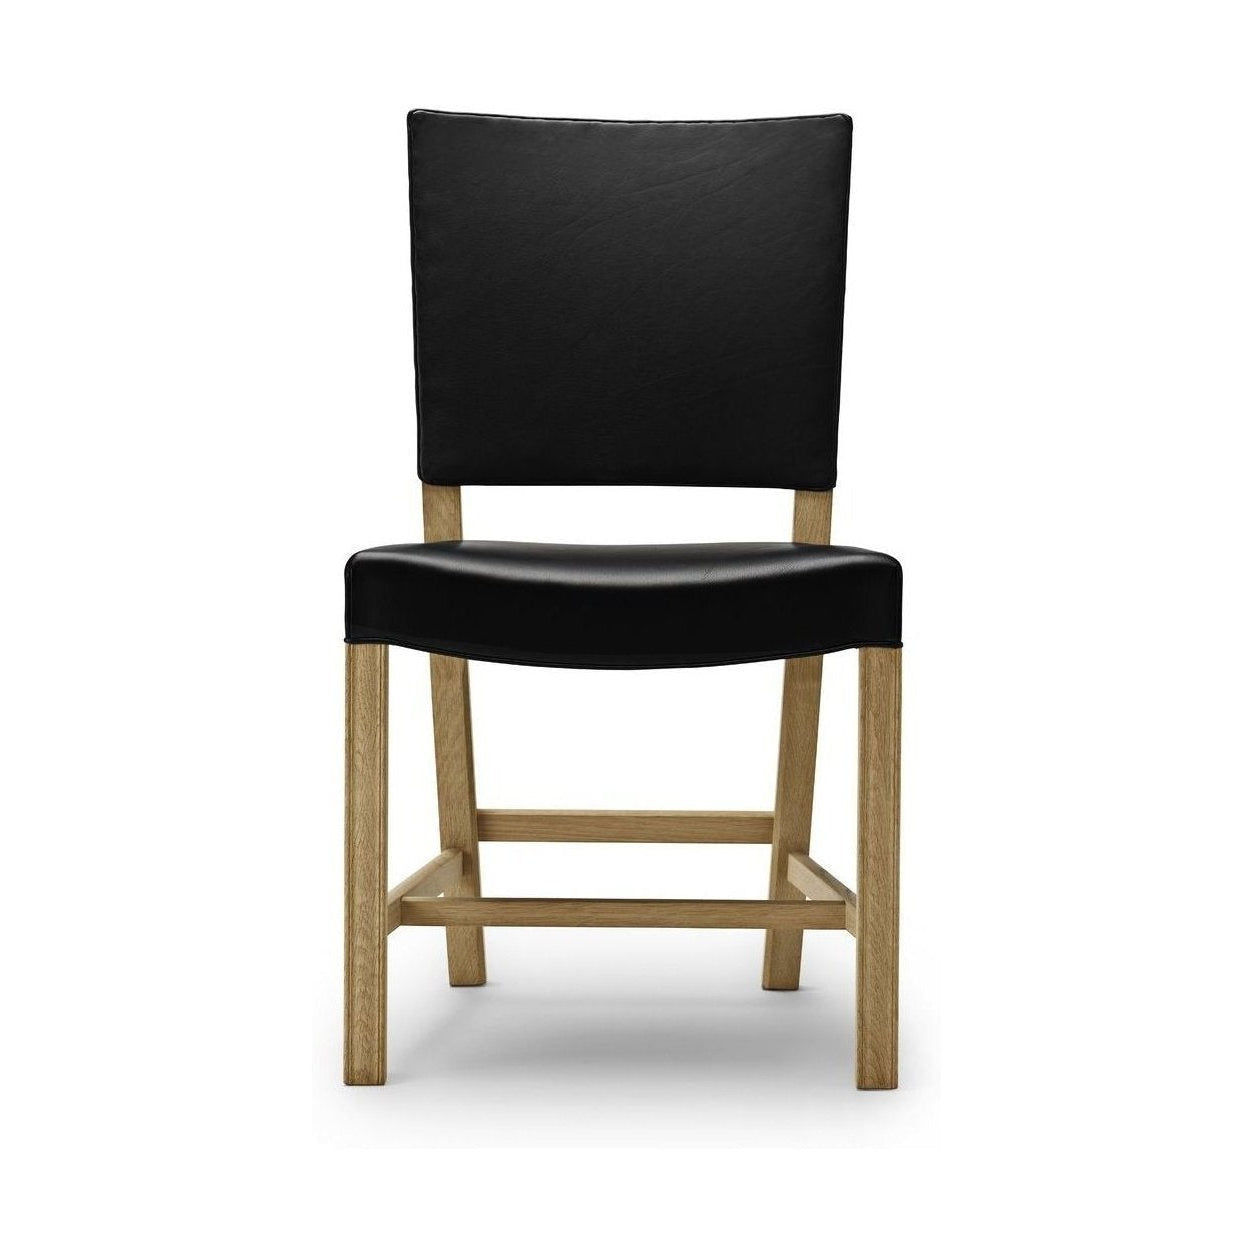 Carl Hansen KK37580 stor rød stol, såpes eik/svart skinn